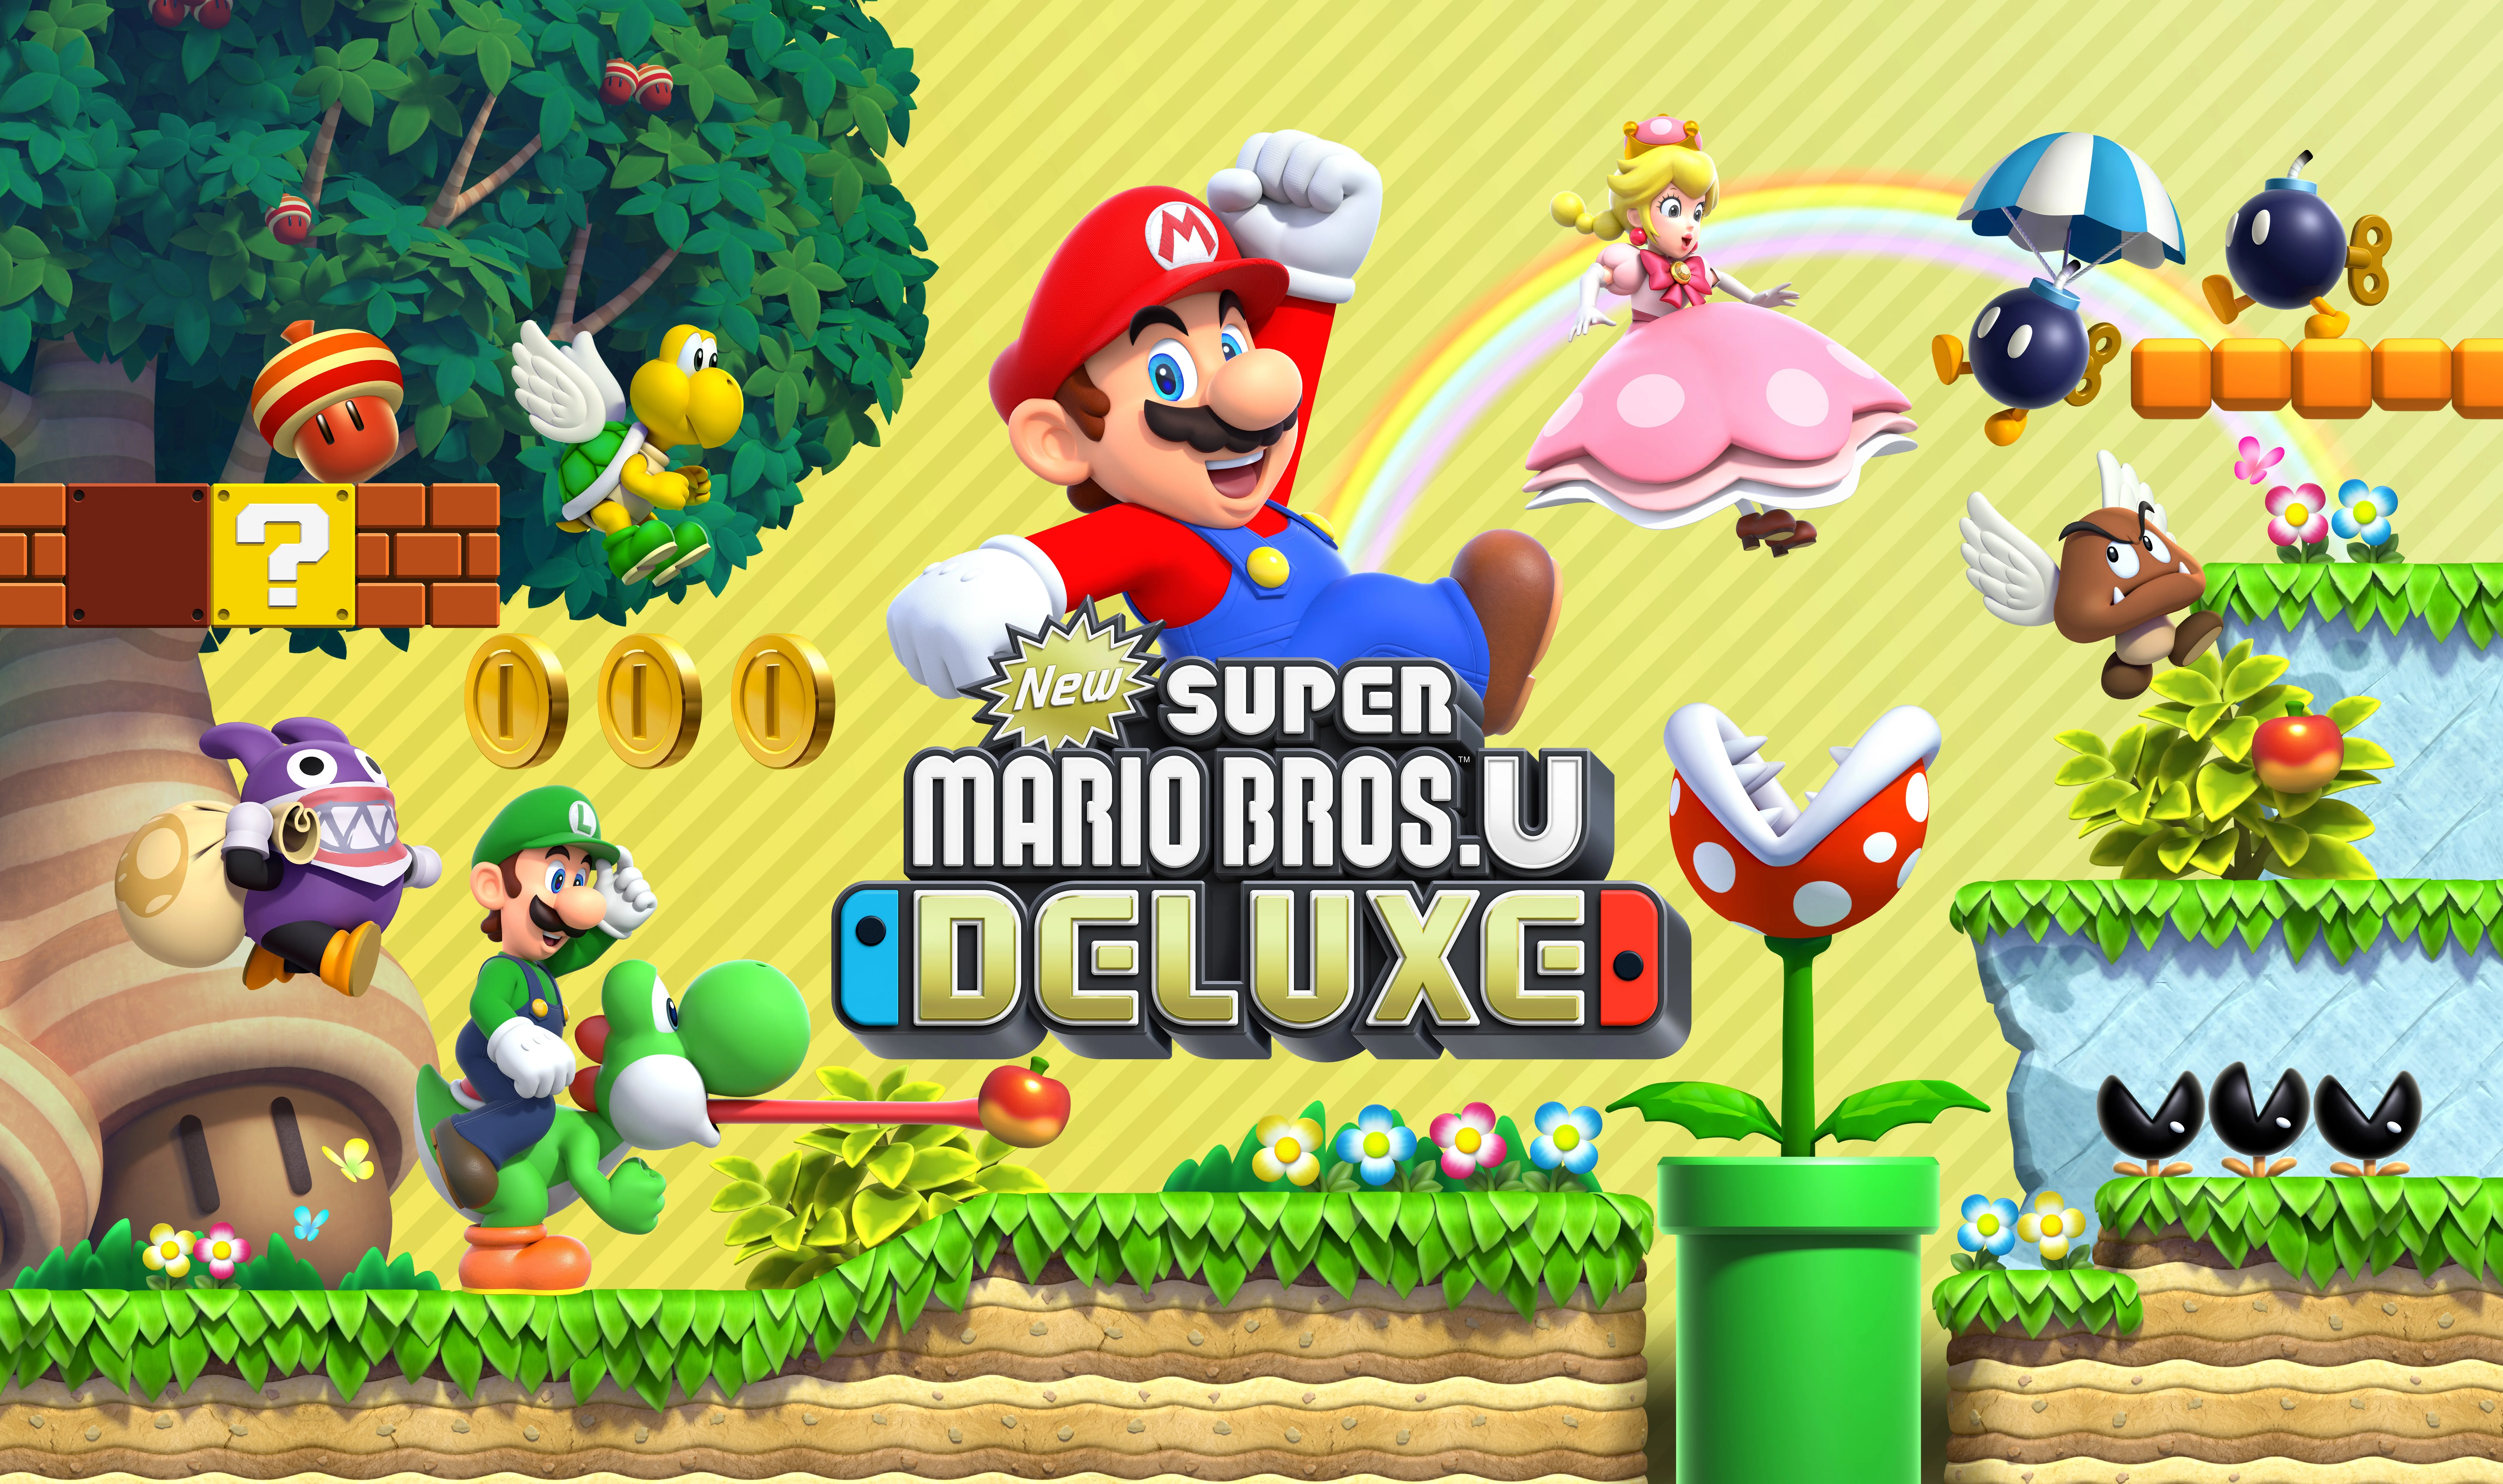 Newer mario bros download. New super Mario Bros u Deluxe Nintendo Switch. Игра New super Mario Bros. U Deluxe. New super Mario Bros. U Deluxe для Nintendo Switch обложка. Игры super Mario Bros Нинтендо.